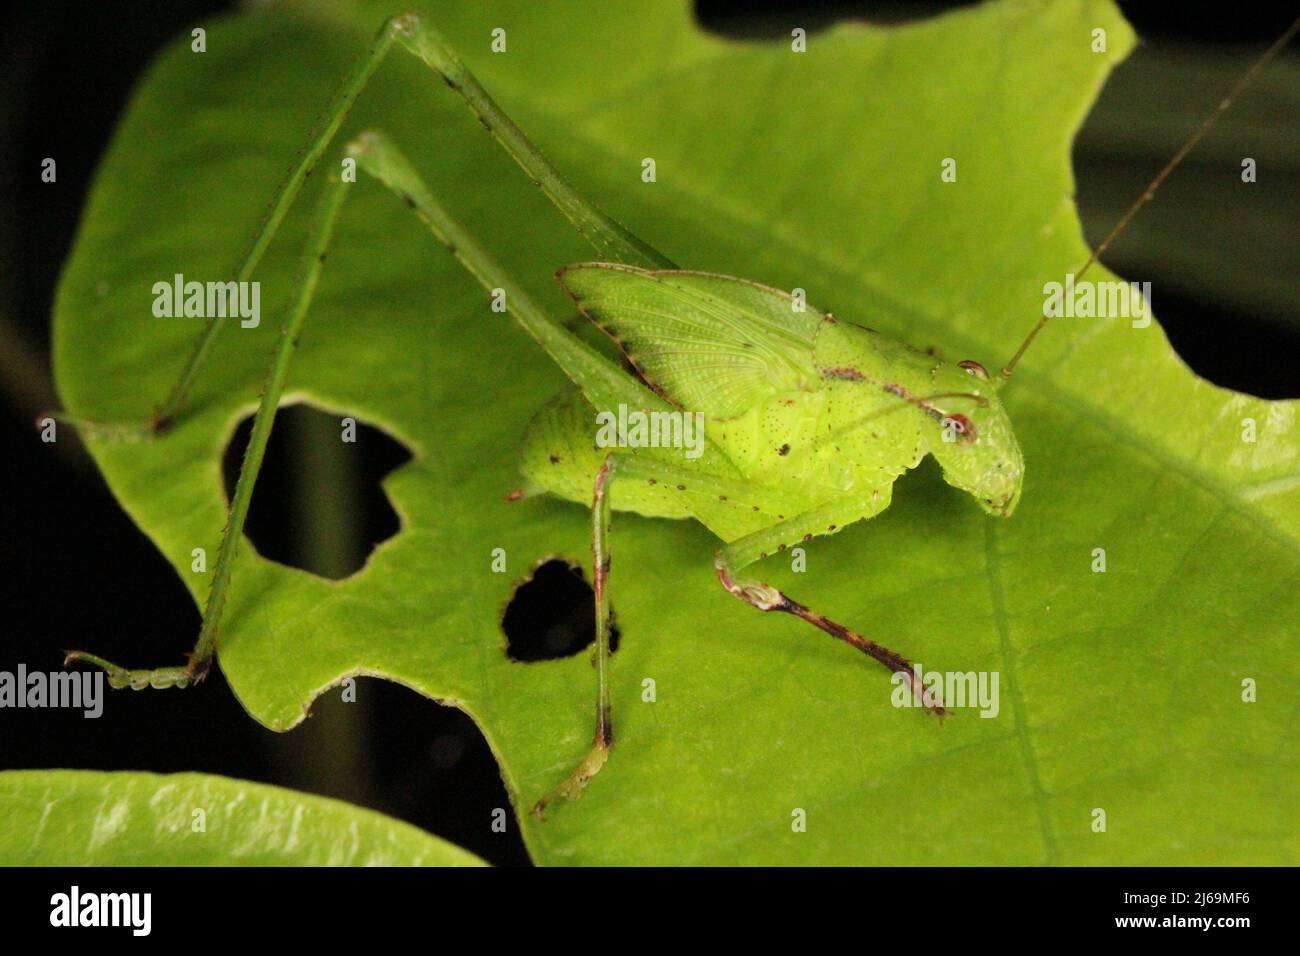 Katydid (Familie Tettigoniidae) Nymphe imitiert ein grünes Blatt, das auf einem natürlichen dunklen Hintergrund aus dem Dschungel von Belize, Mittelamerika, isoliert ist Stockfoto